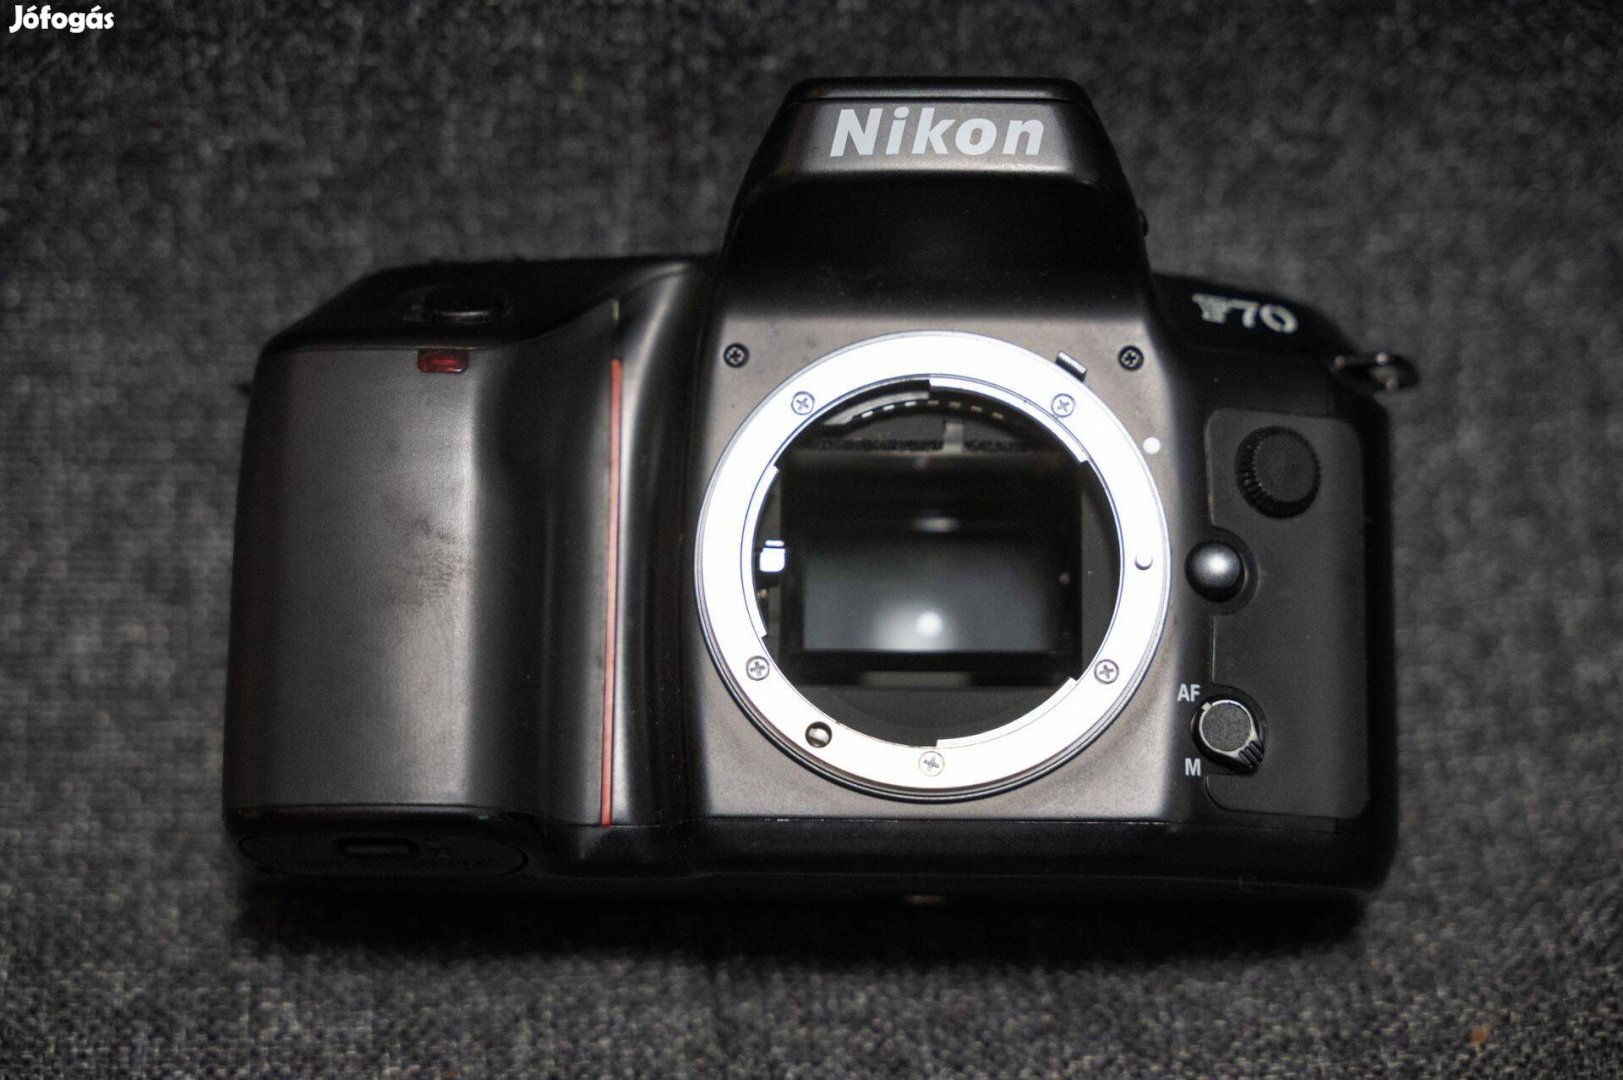 Nikon F-70 analóg filmes tükörreflexes váz dátumozó hátfallal